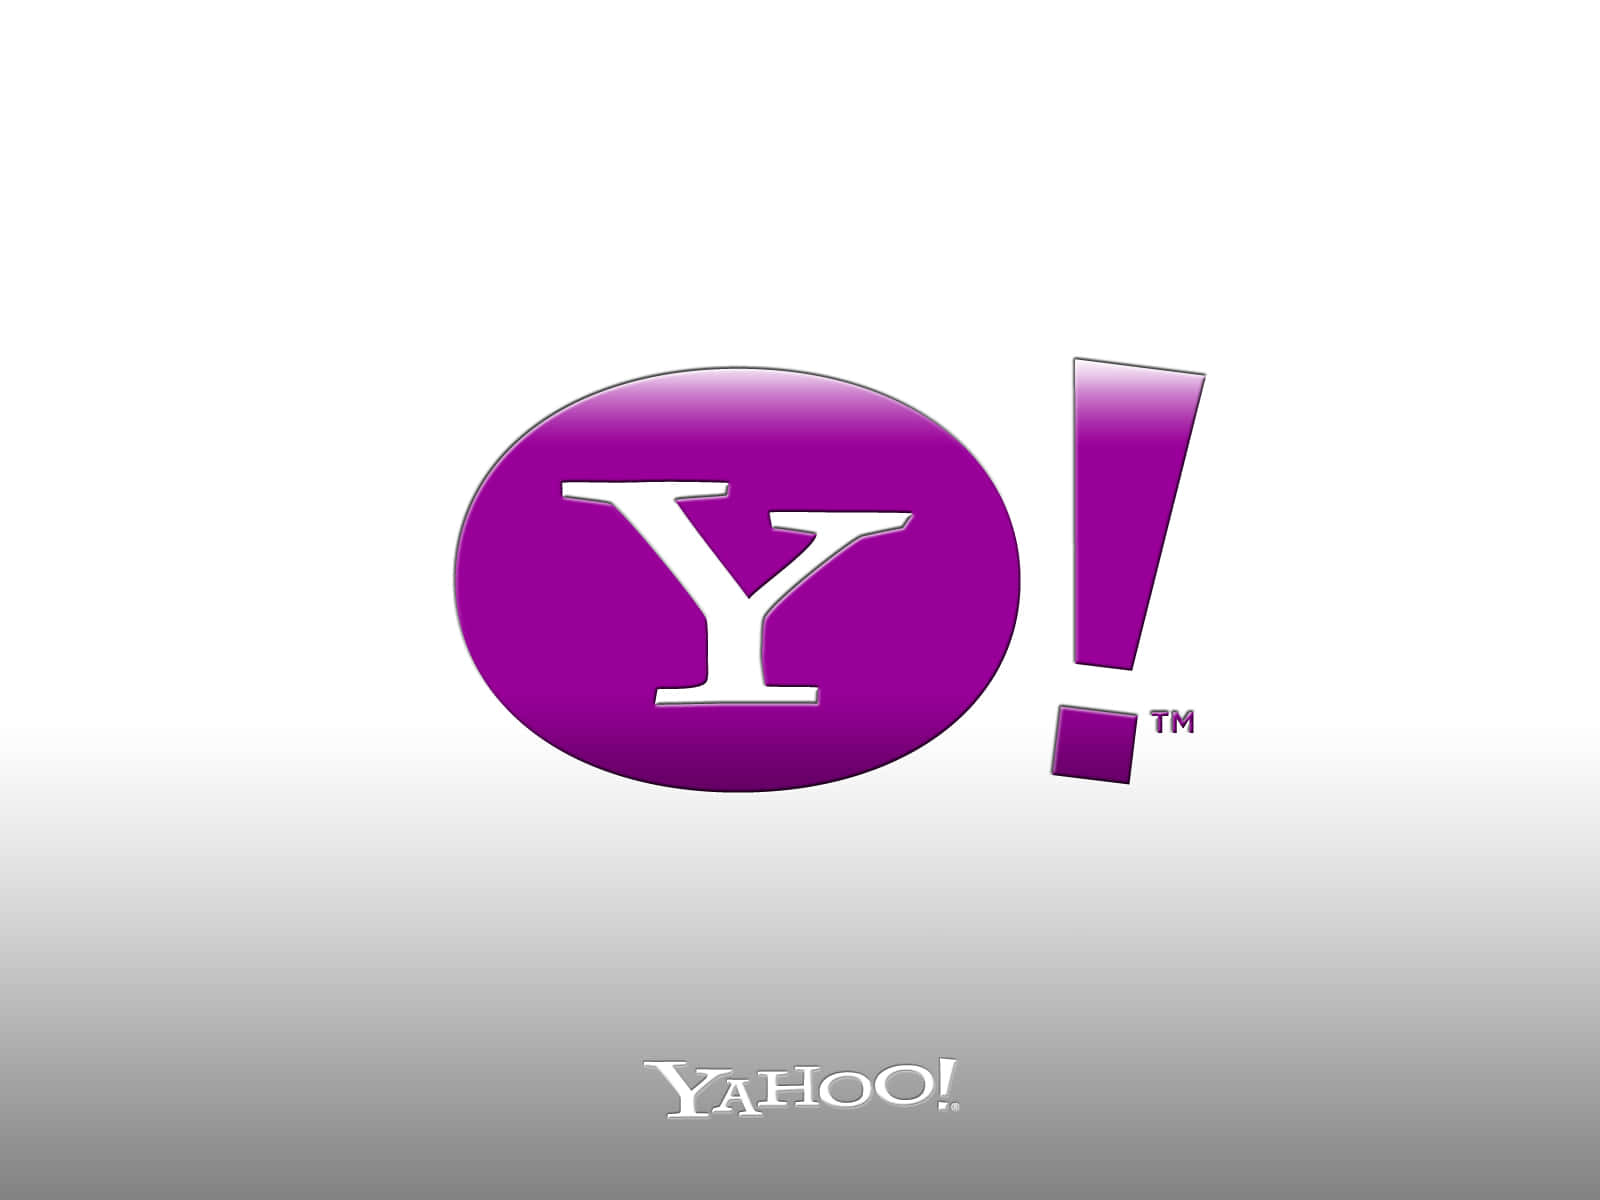 Yahooobtén Las Últimas Noticias, Deportes Y Entretenimiento